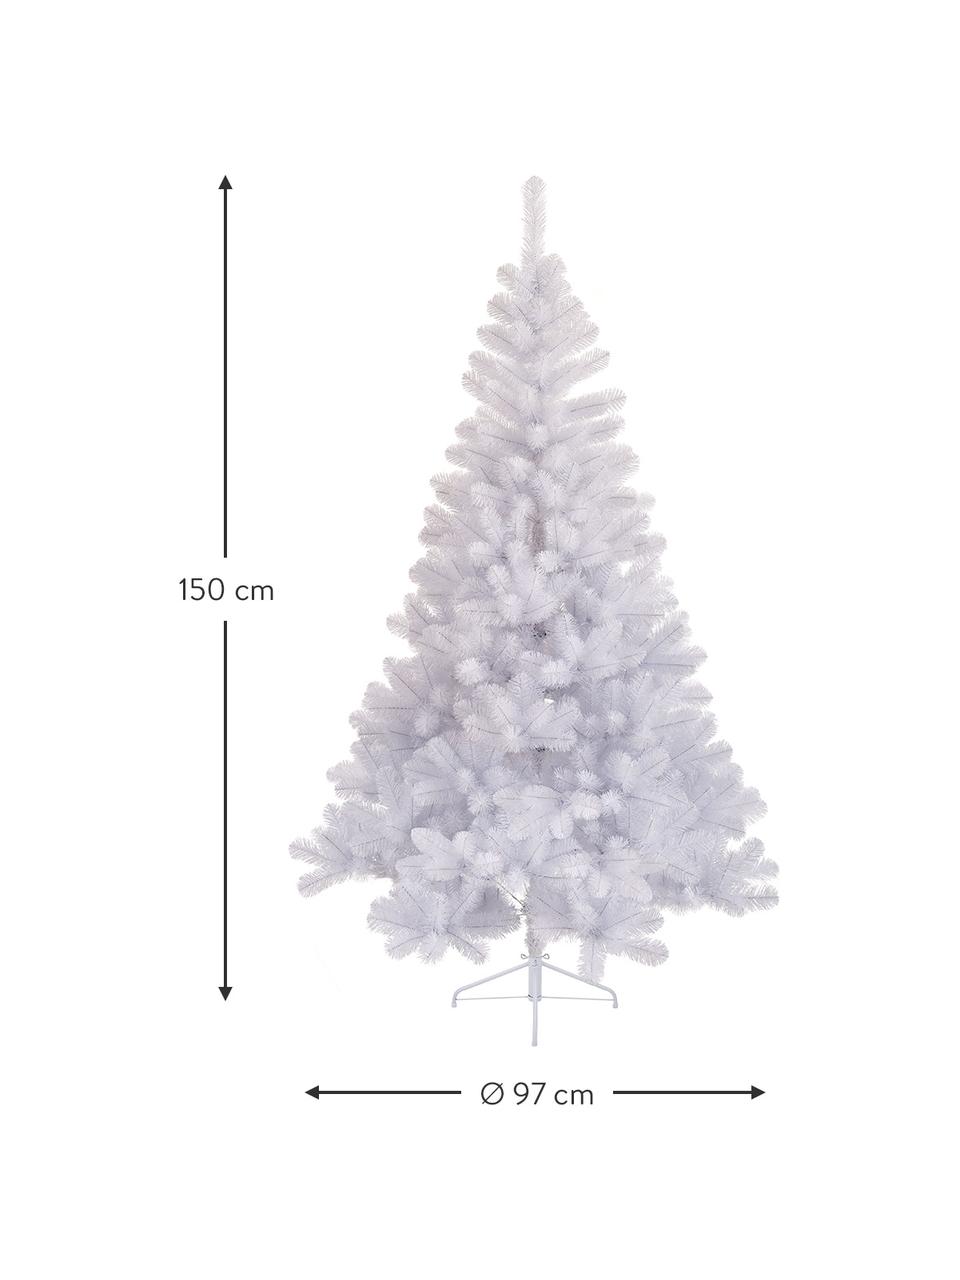 Umělý vánoční stromek Imperial, v různých velikostech, Bílá, Ø 97 cm, V 150 cm